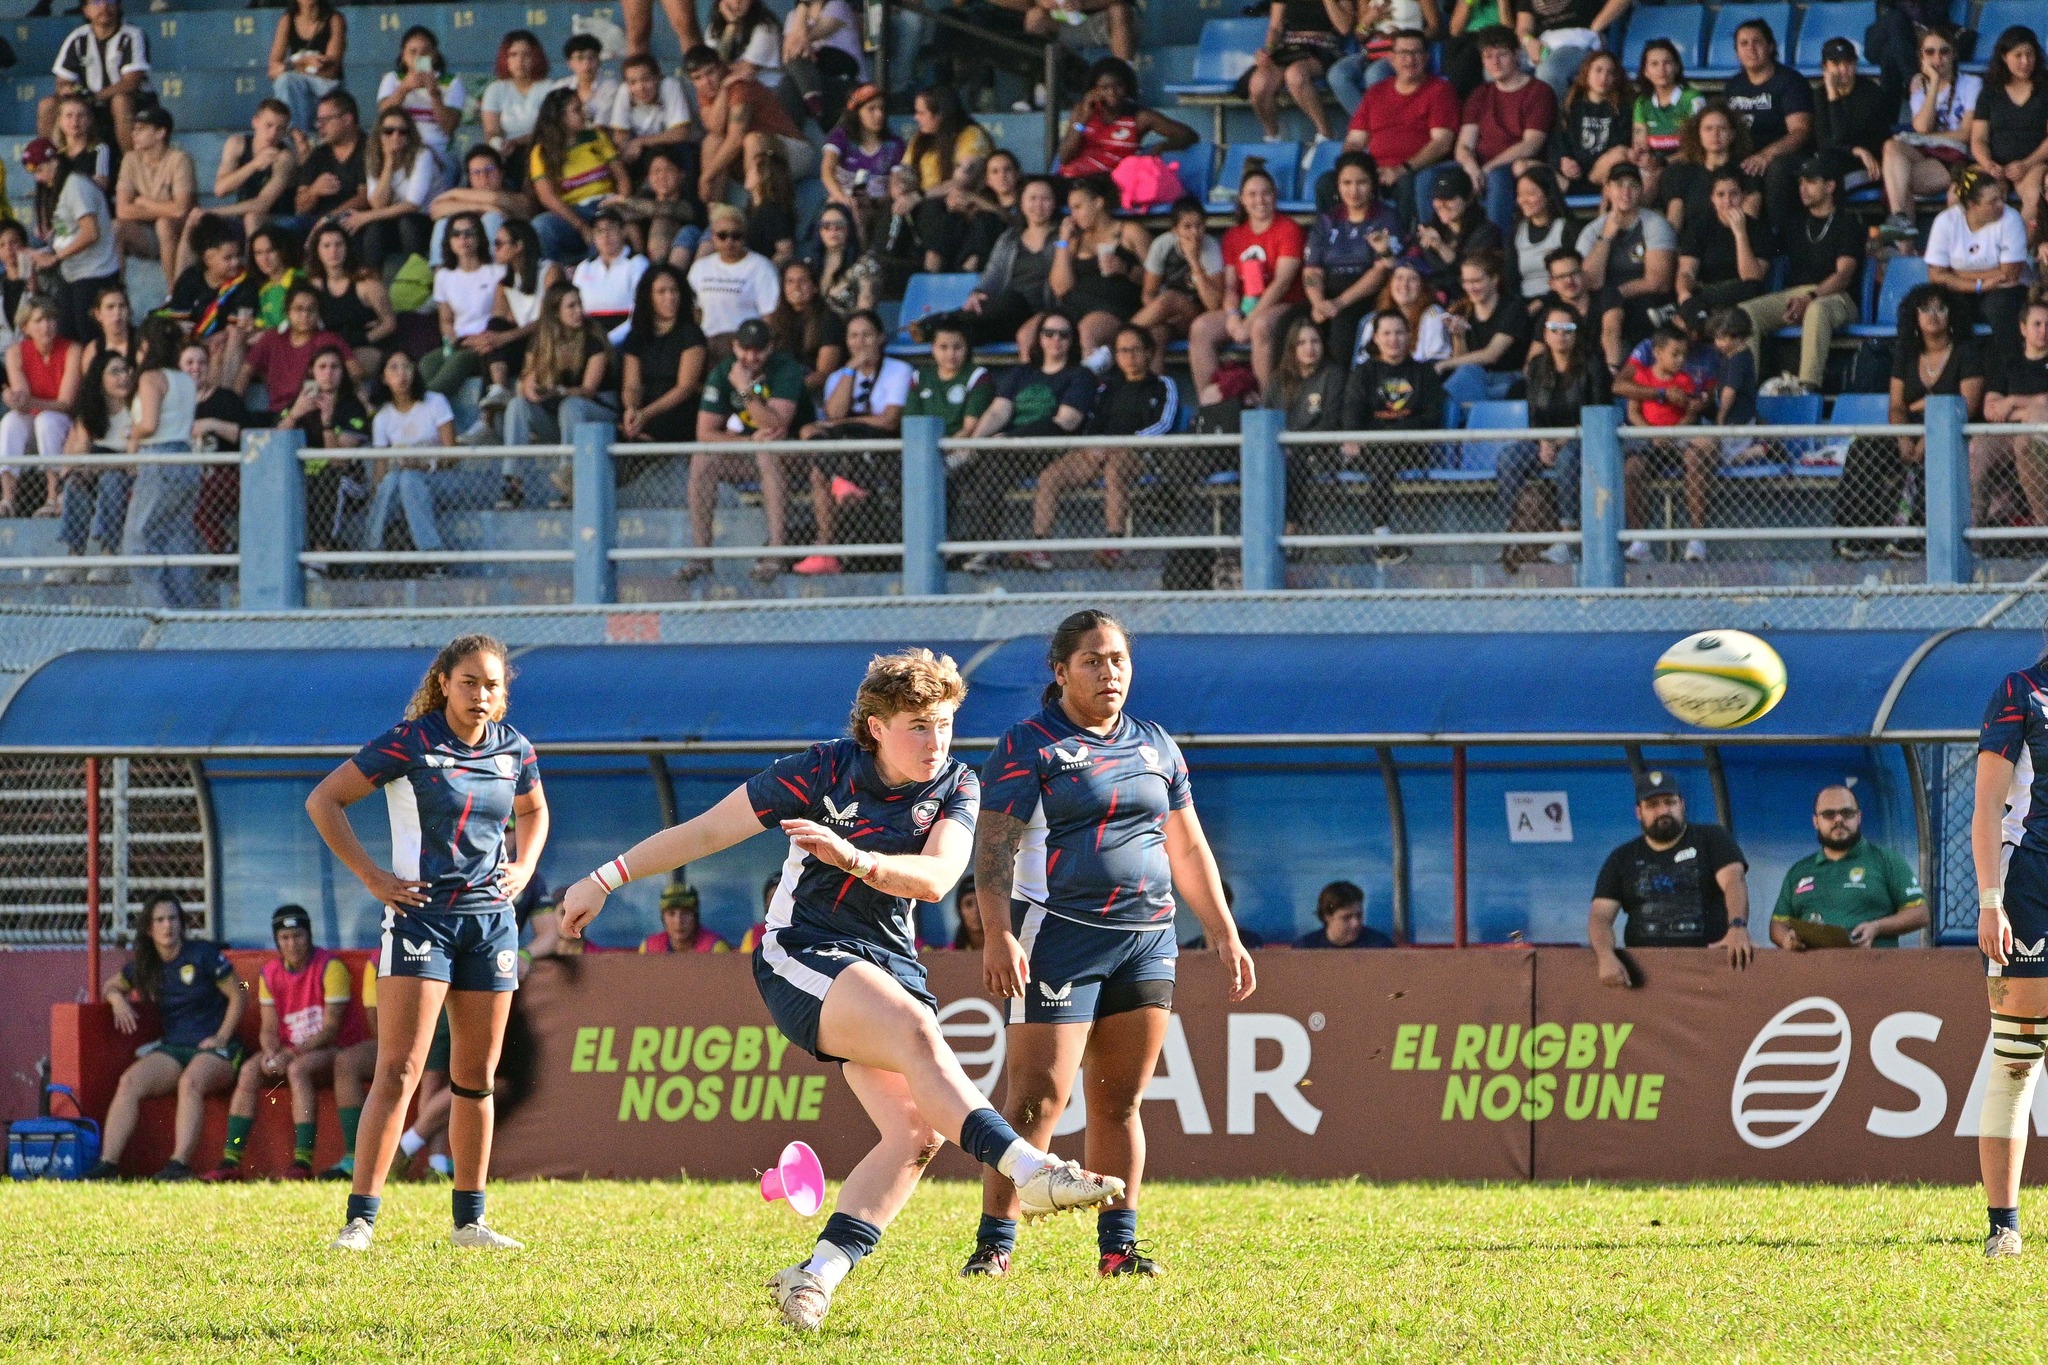 Colômbia e Estados Unidos duelam nessa quarta-feira em Mogi das Cruzes pelo Americas Rugby Trophy feminino